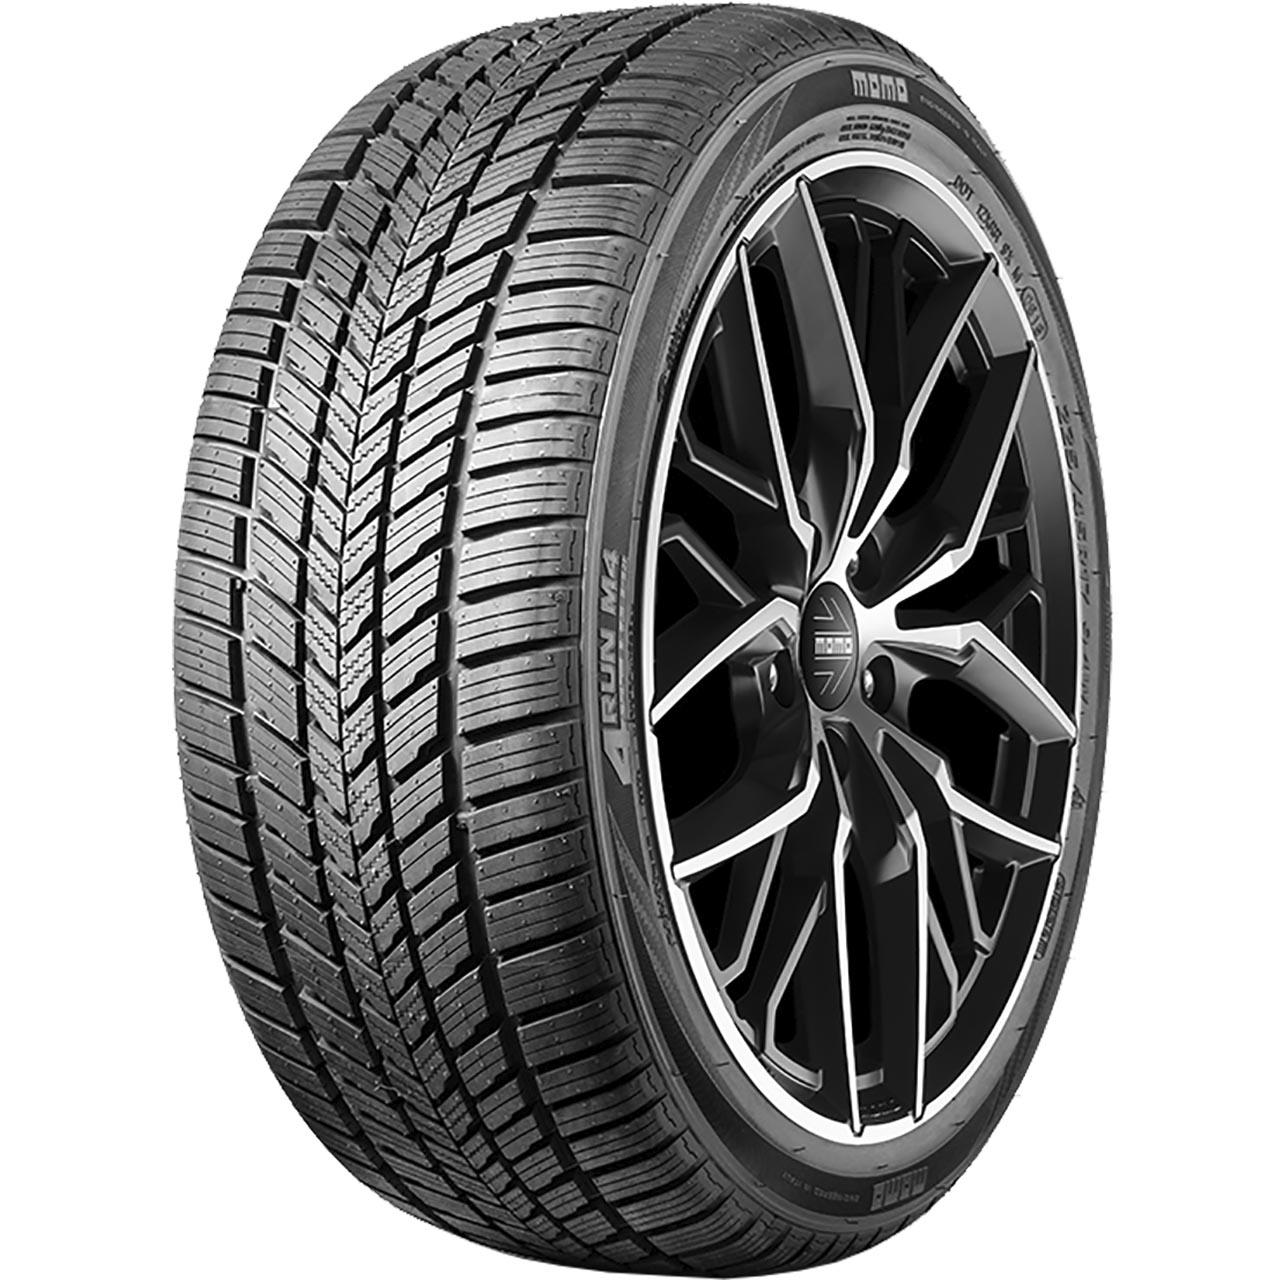 Momo Tire M 4 Four Season 155/65R13 73T